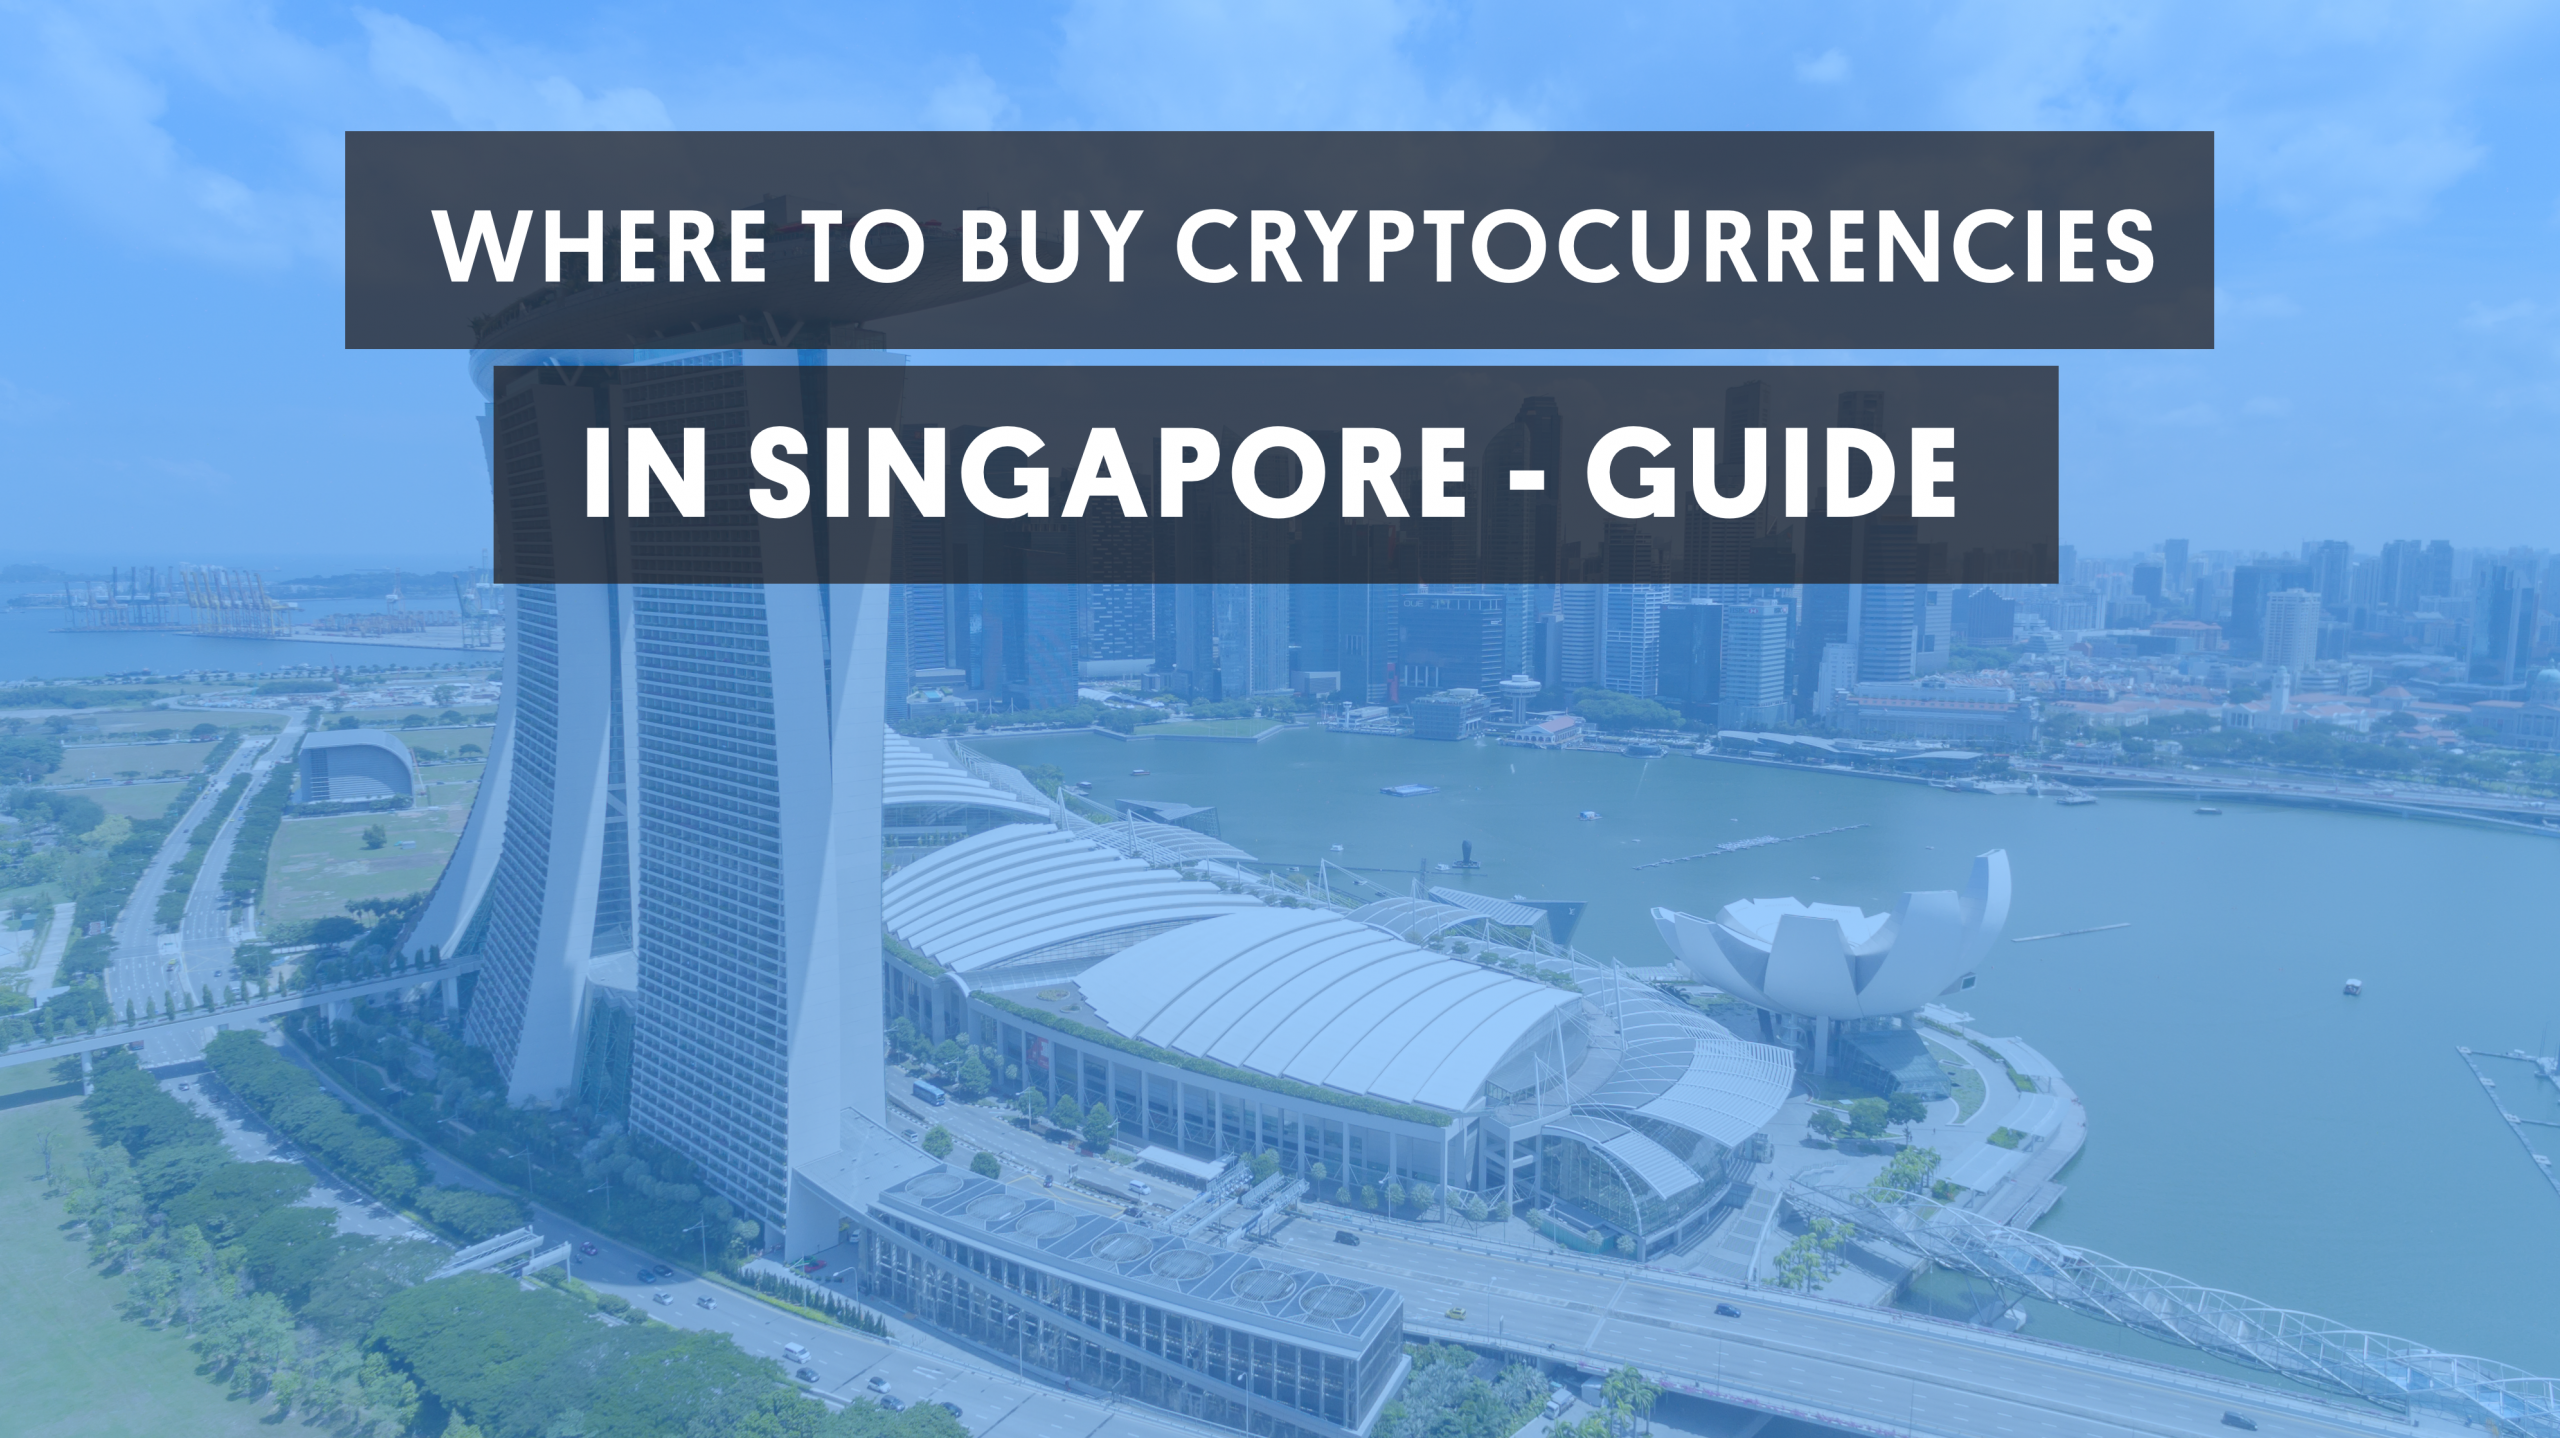 सिंगापुर गाइड में क्रिप्टोकरेंसी कहां से खरीदें?